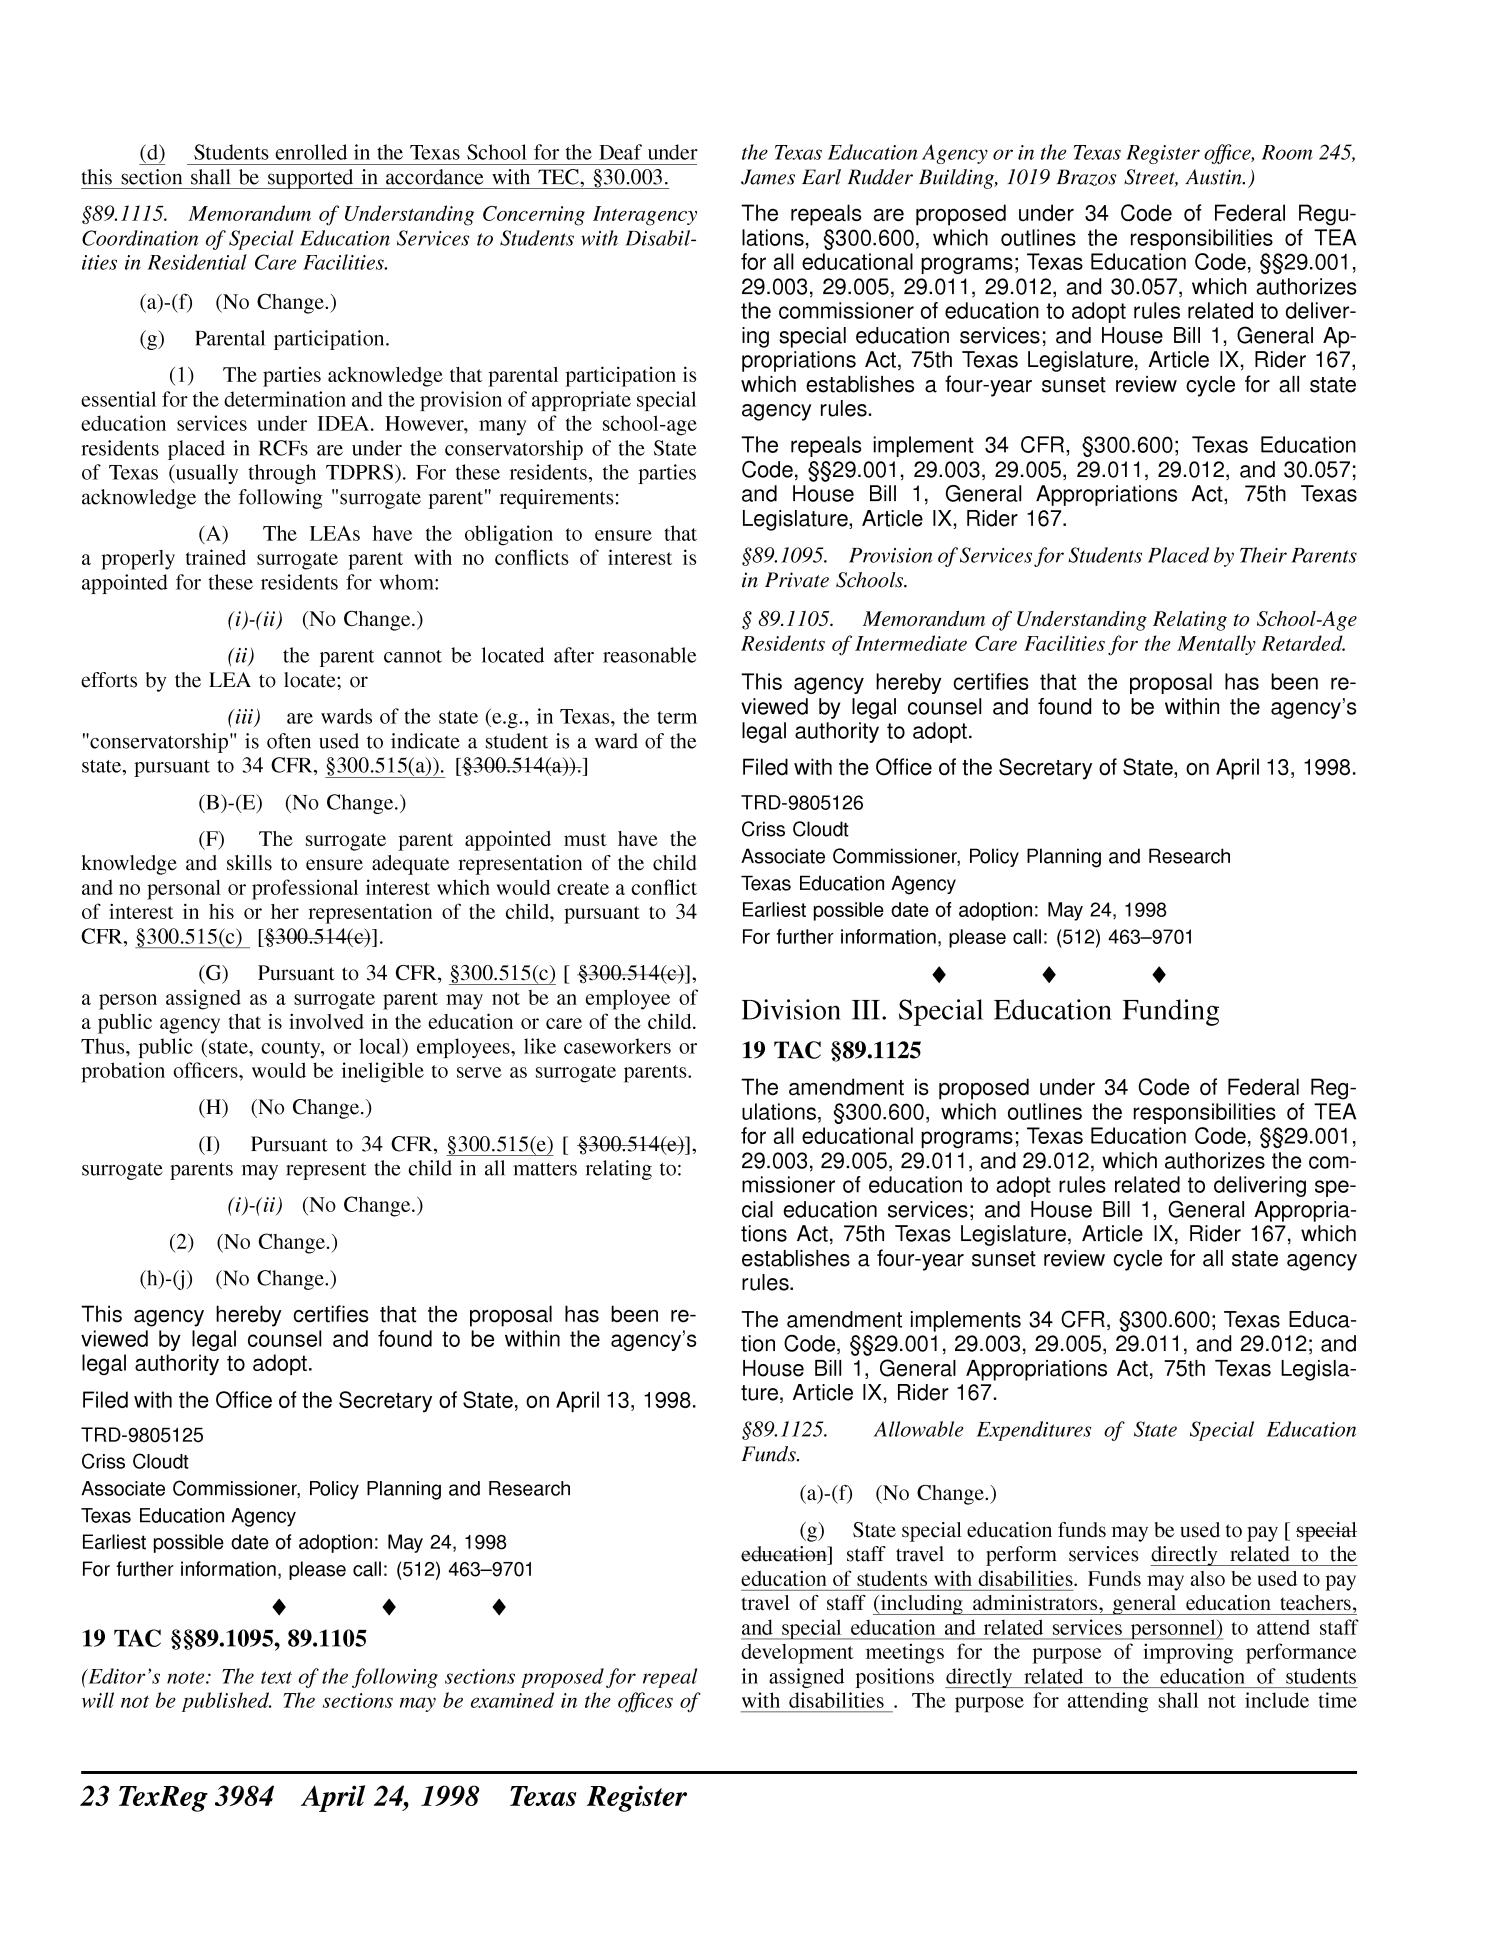 Texas Register, Volume 23, Number 17, Pages 3957-4141, April 24, 1998
                                                
                                                    3984
                                                